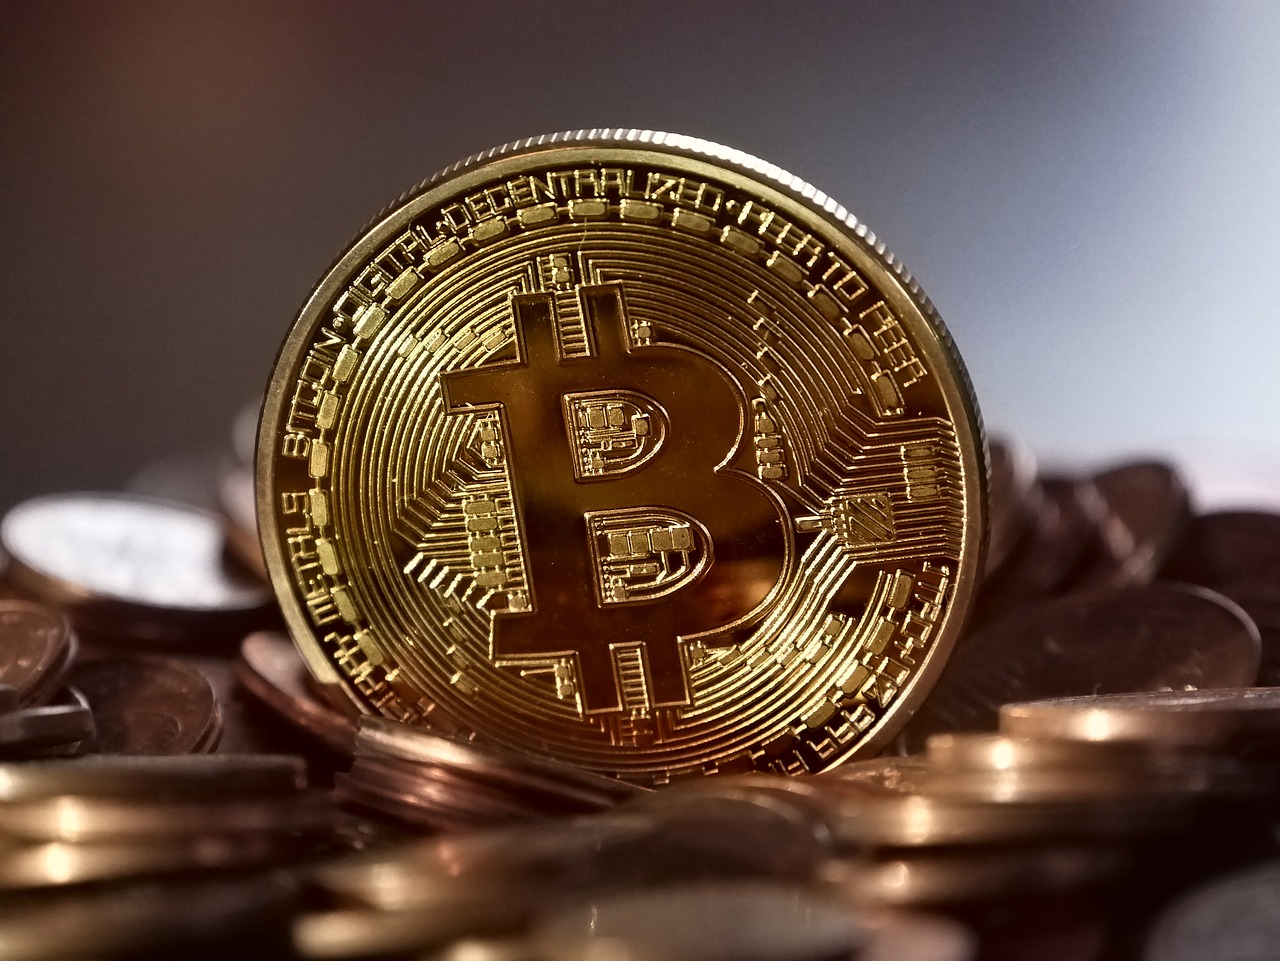 Yra Bitcoins Nemokamai Pinigai, Dvejetainis variantas nuo 10 eurų